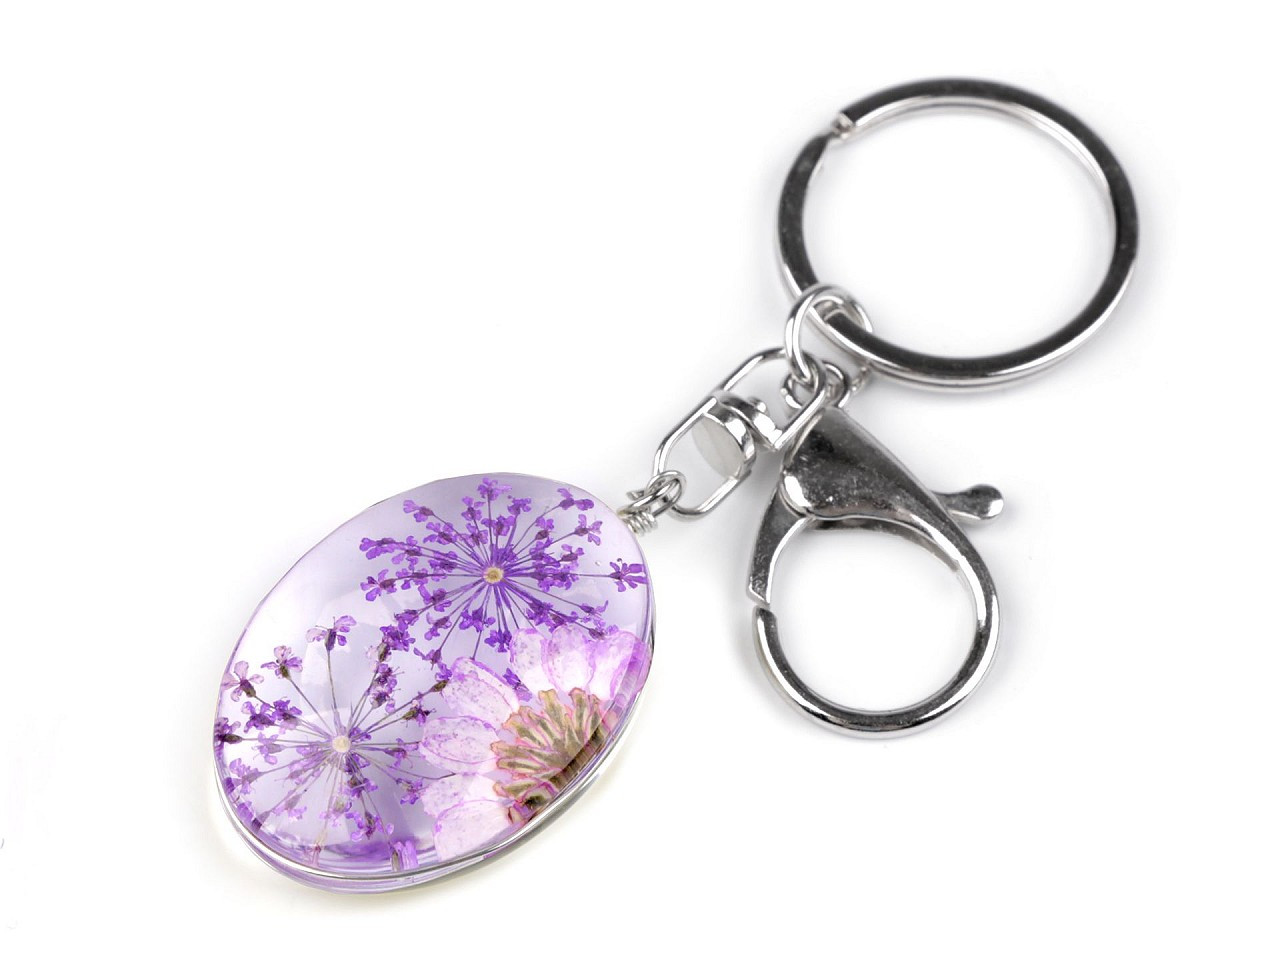 Přívěsek na klíče / kabelku lisované květy v oválu, barva 3 fialová lila